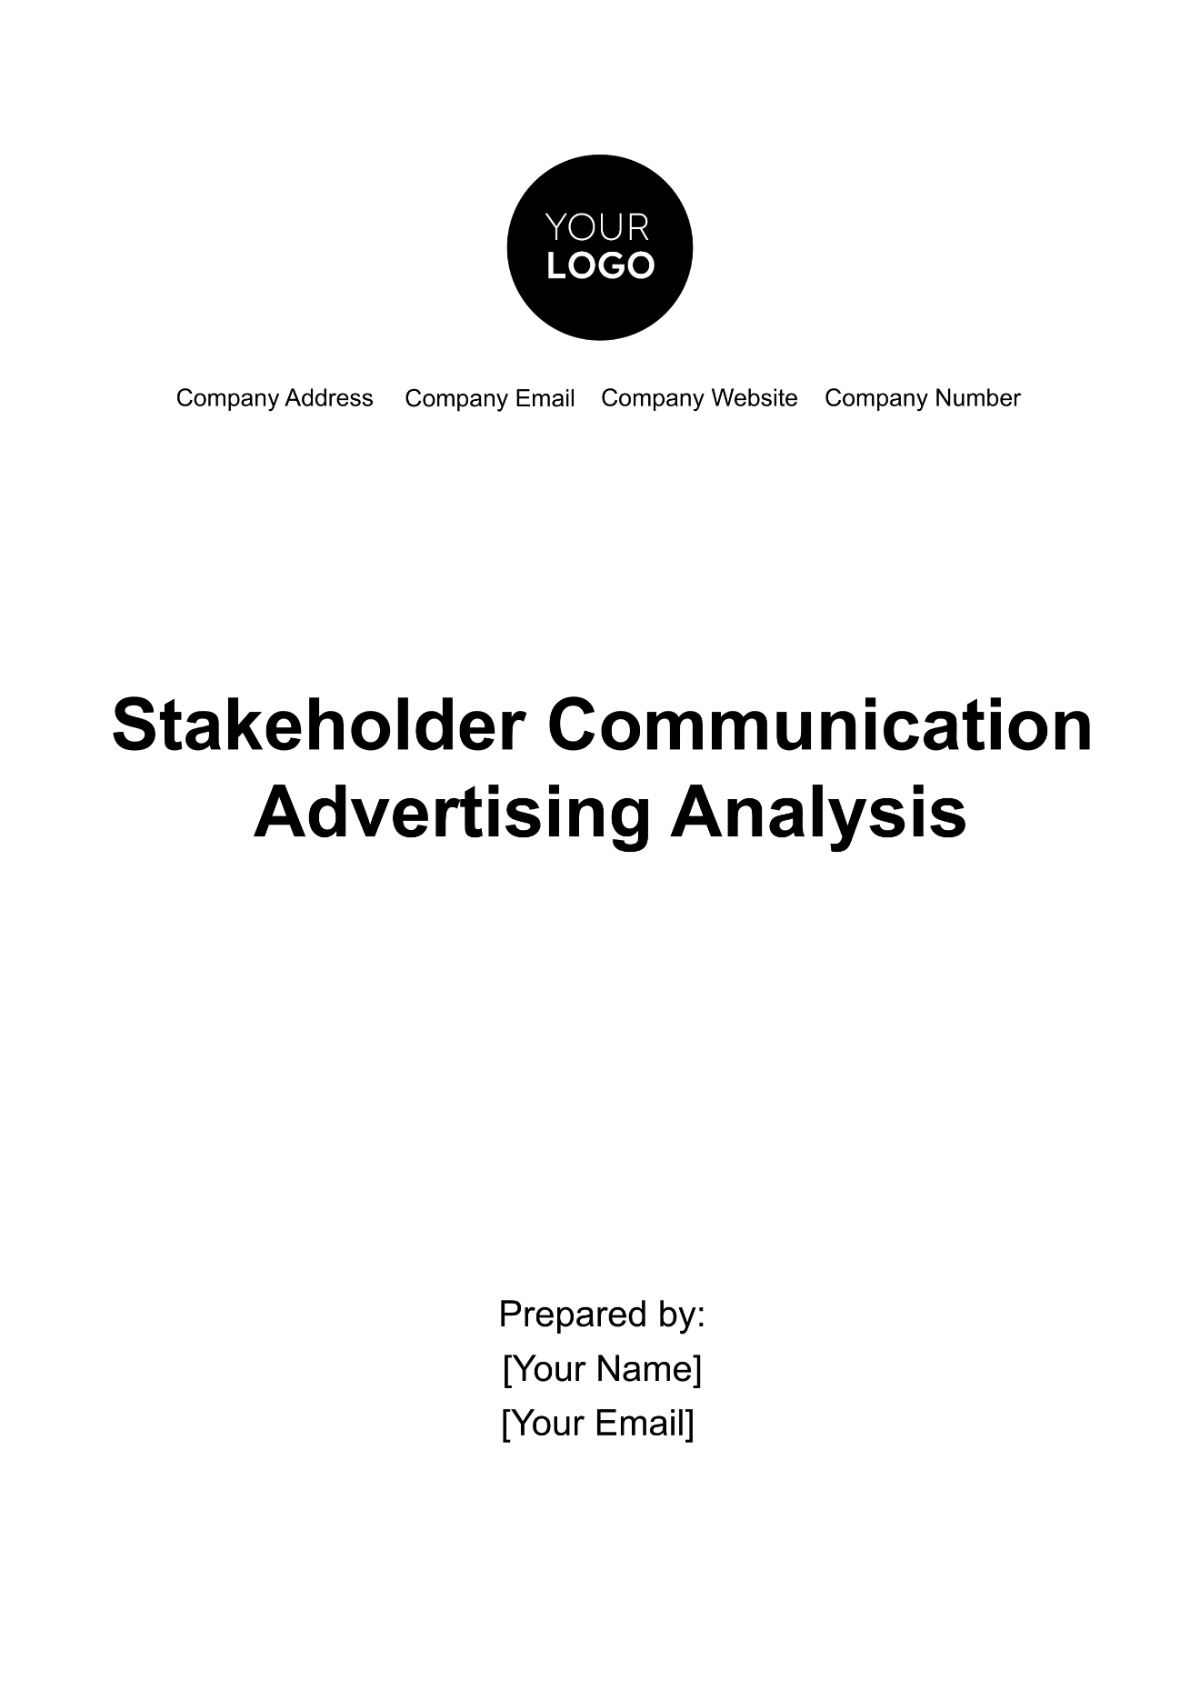 Free Stakeholder Communication Advertising Analysis Template